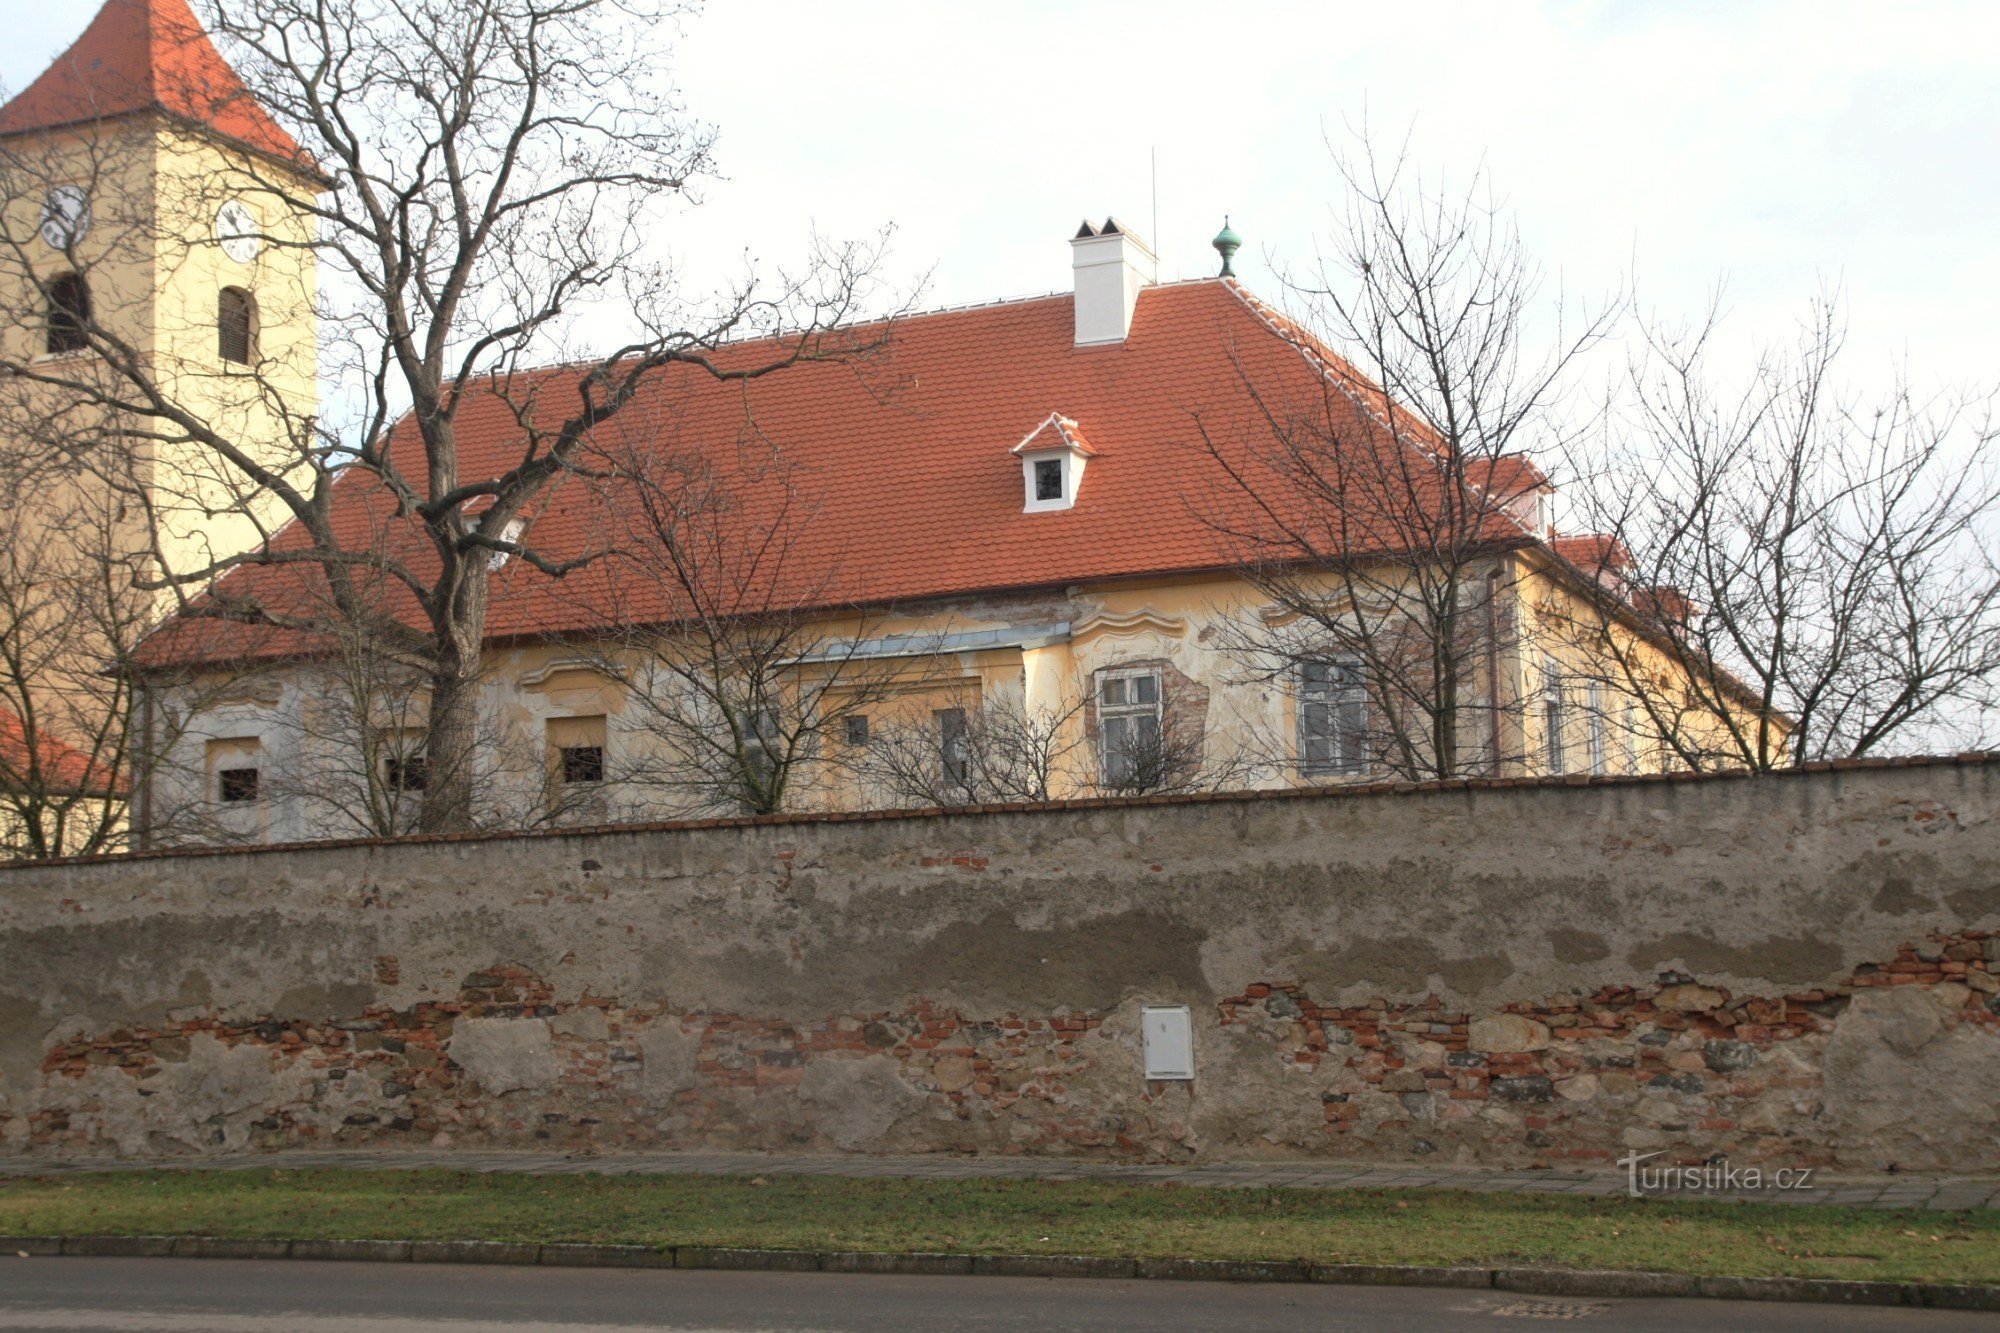 Loděnice - Church of St. Markets